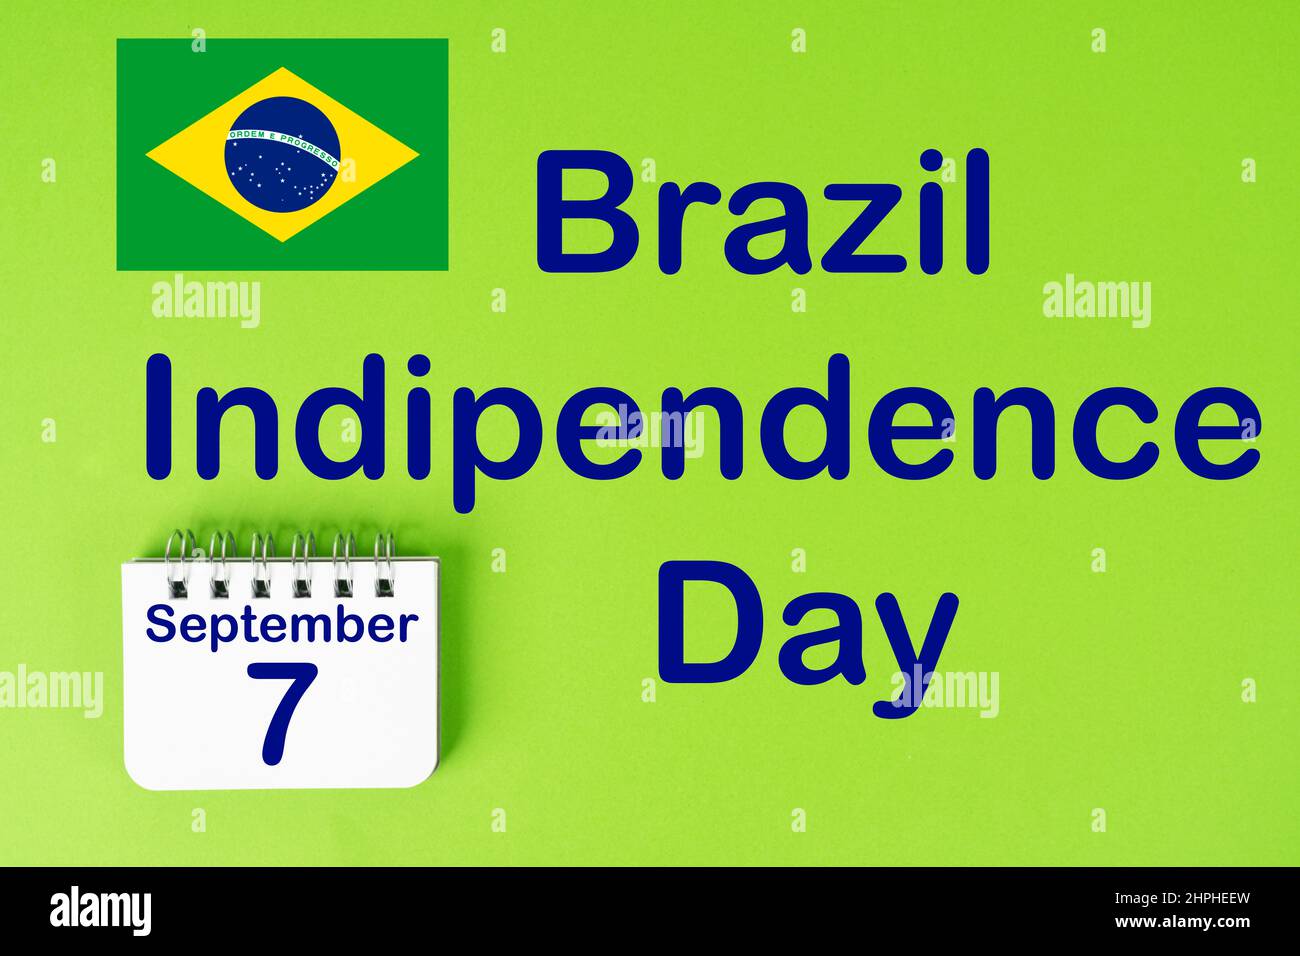 Die Feier des brasilianischen Unabhängigkeitstages mit der Flagge Brasiliens und dem Kalender, der den 7. September anzeigt Stockfoto